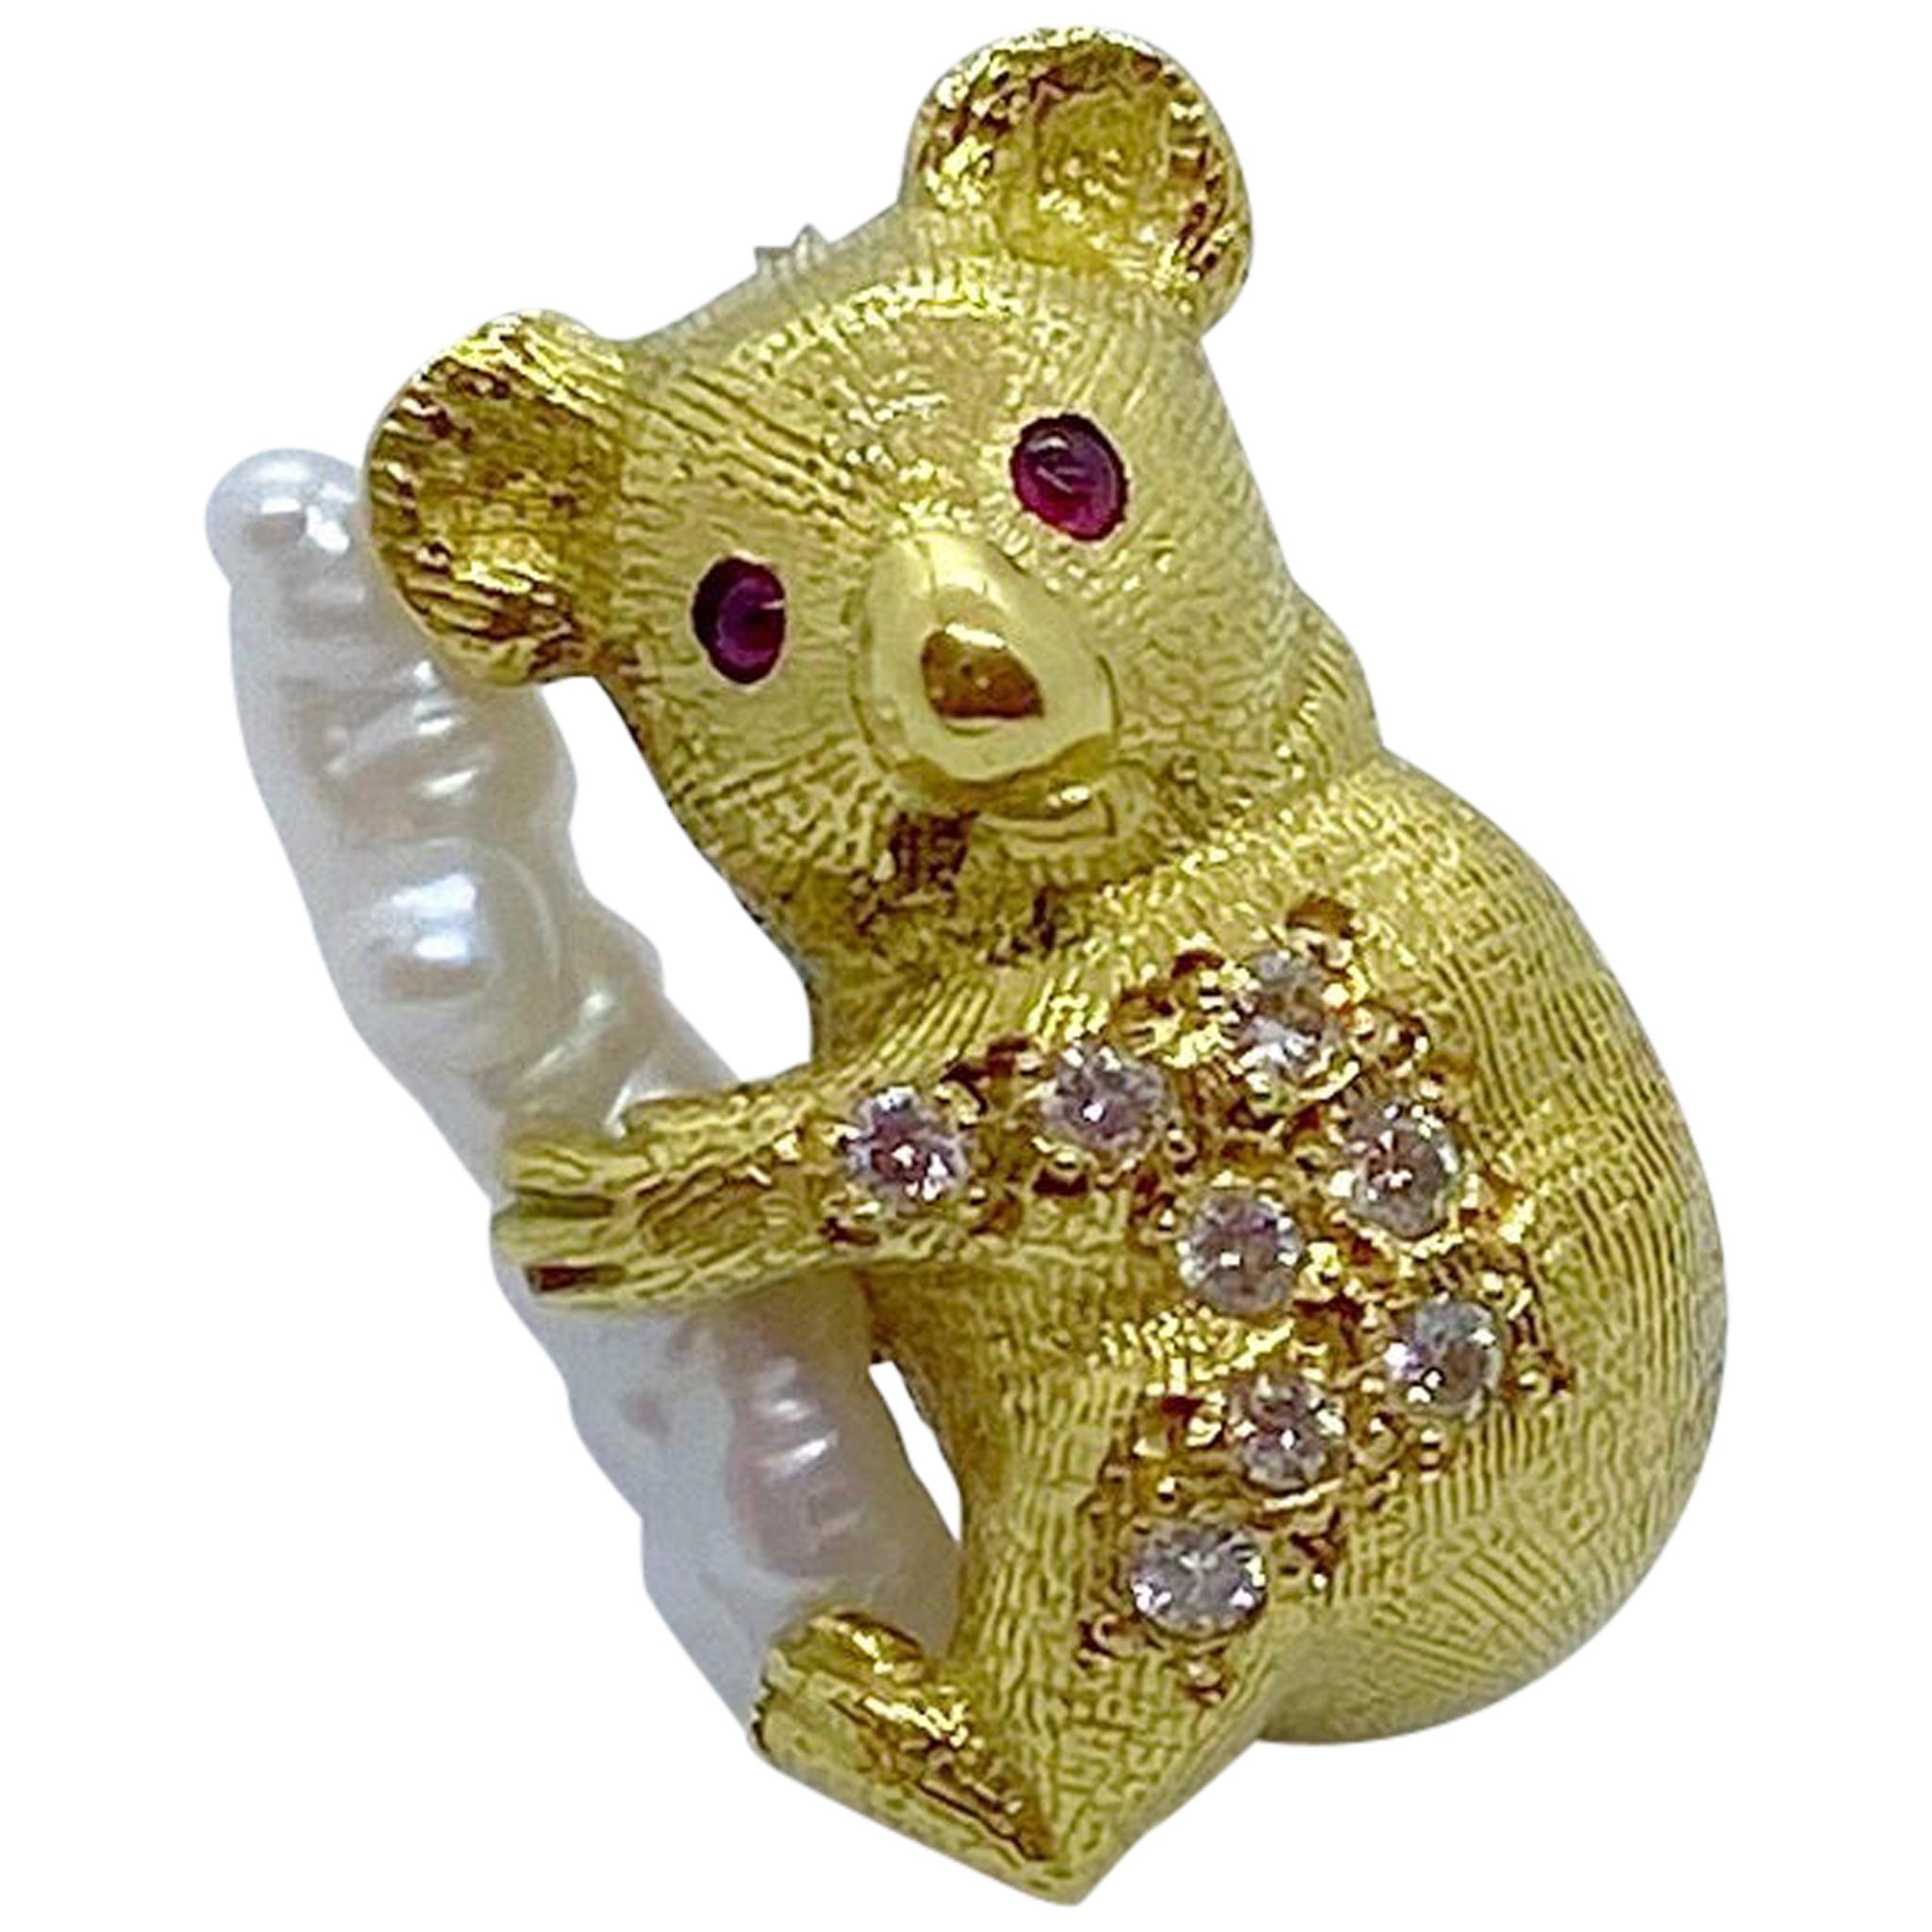 Vintage Art Deco Style Acrylic Australian Koala Bear Brooch Broach Pin Gift 